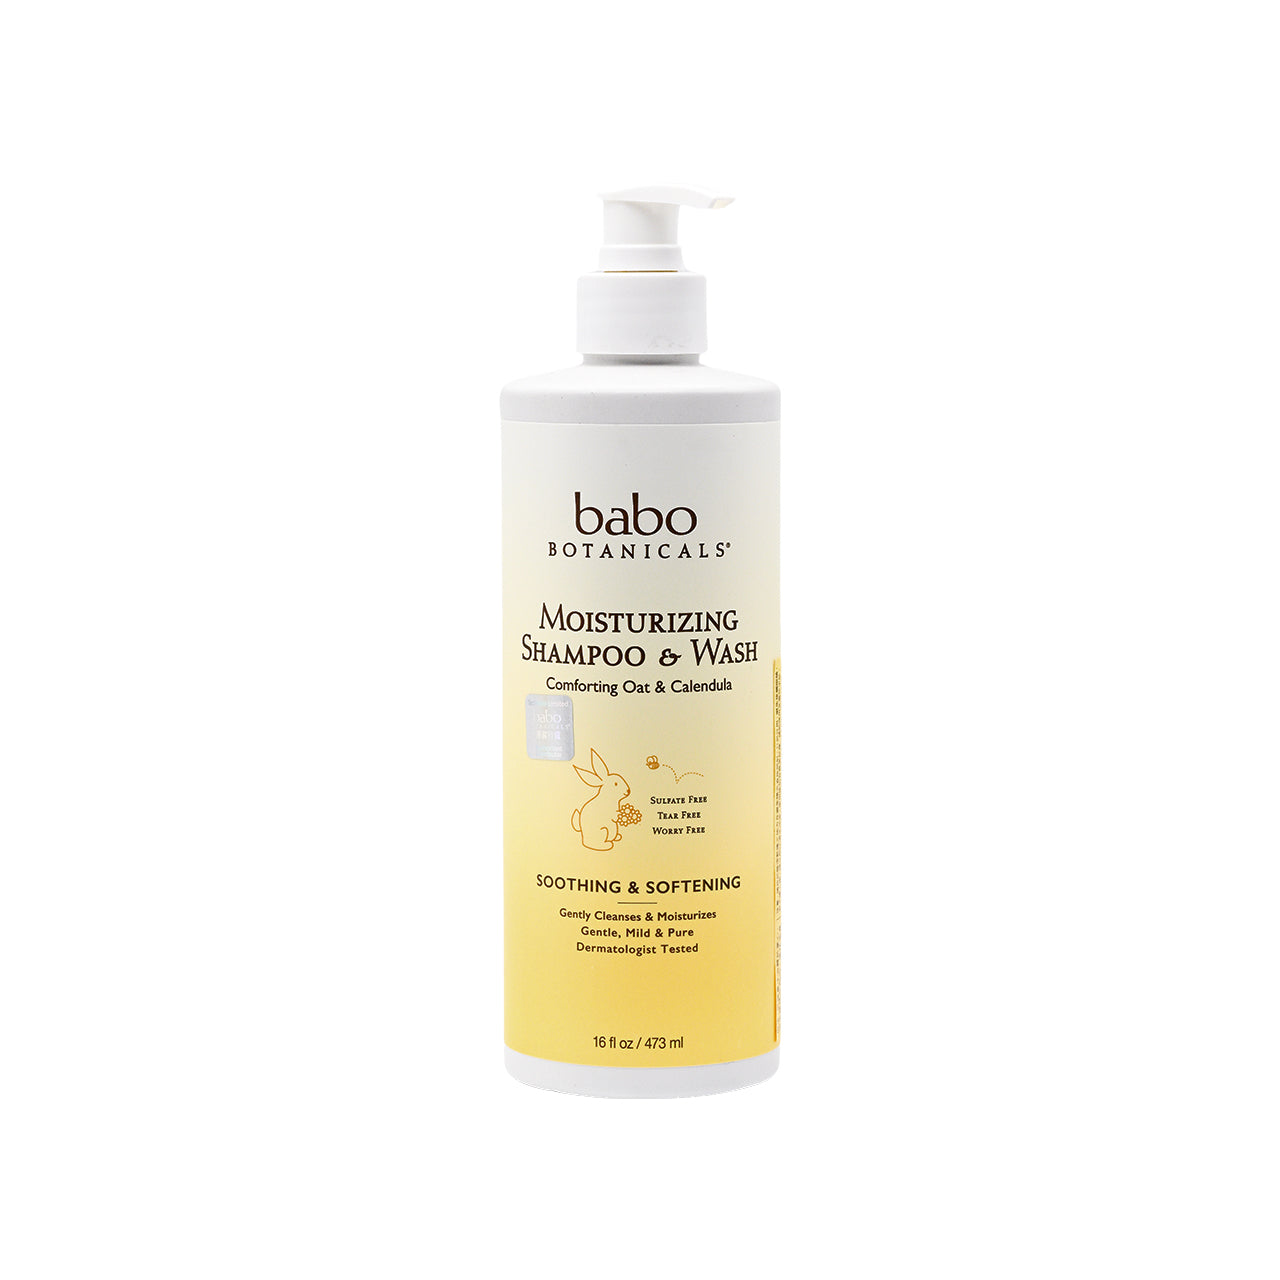 Babo Botanicals Moisturizing Baby Shampoo & Wash 473ml | Sasa Global eShop